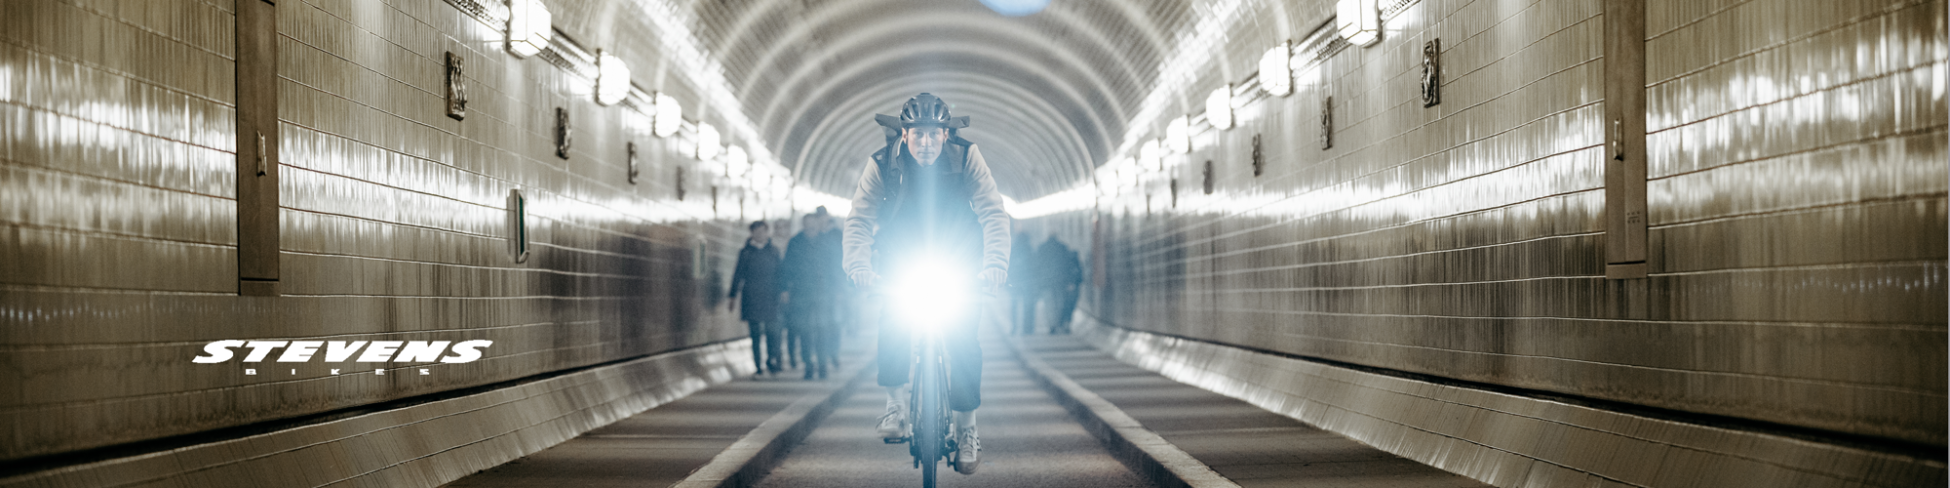 Stevens Urban-E-Bike mit Licht im Tunnel